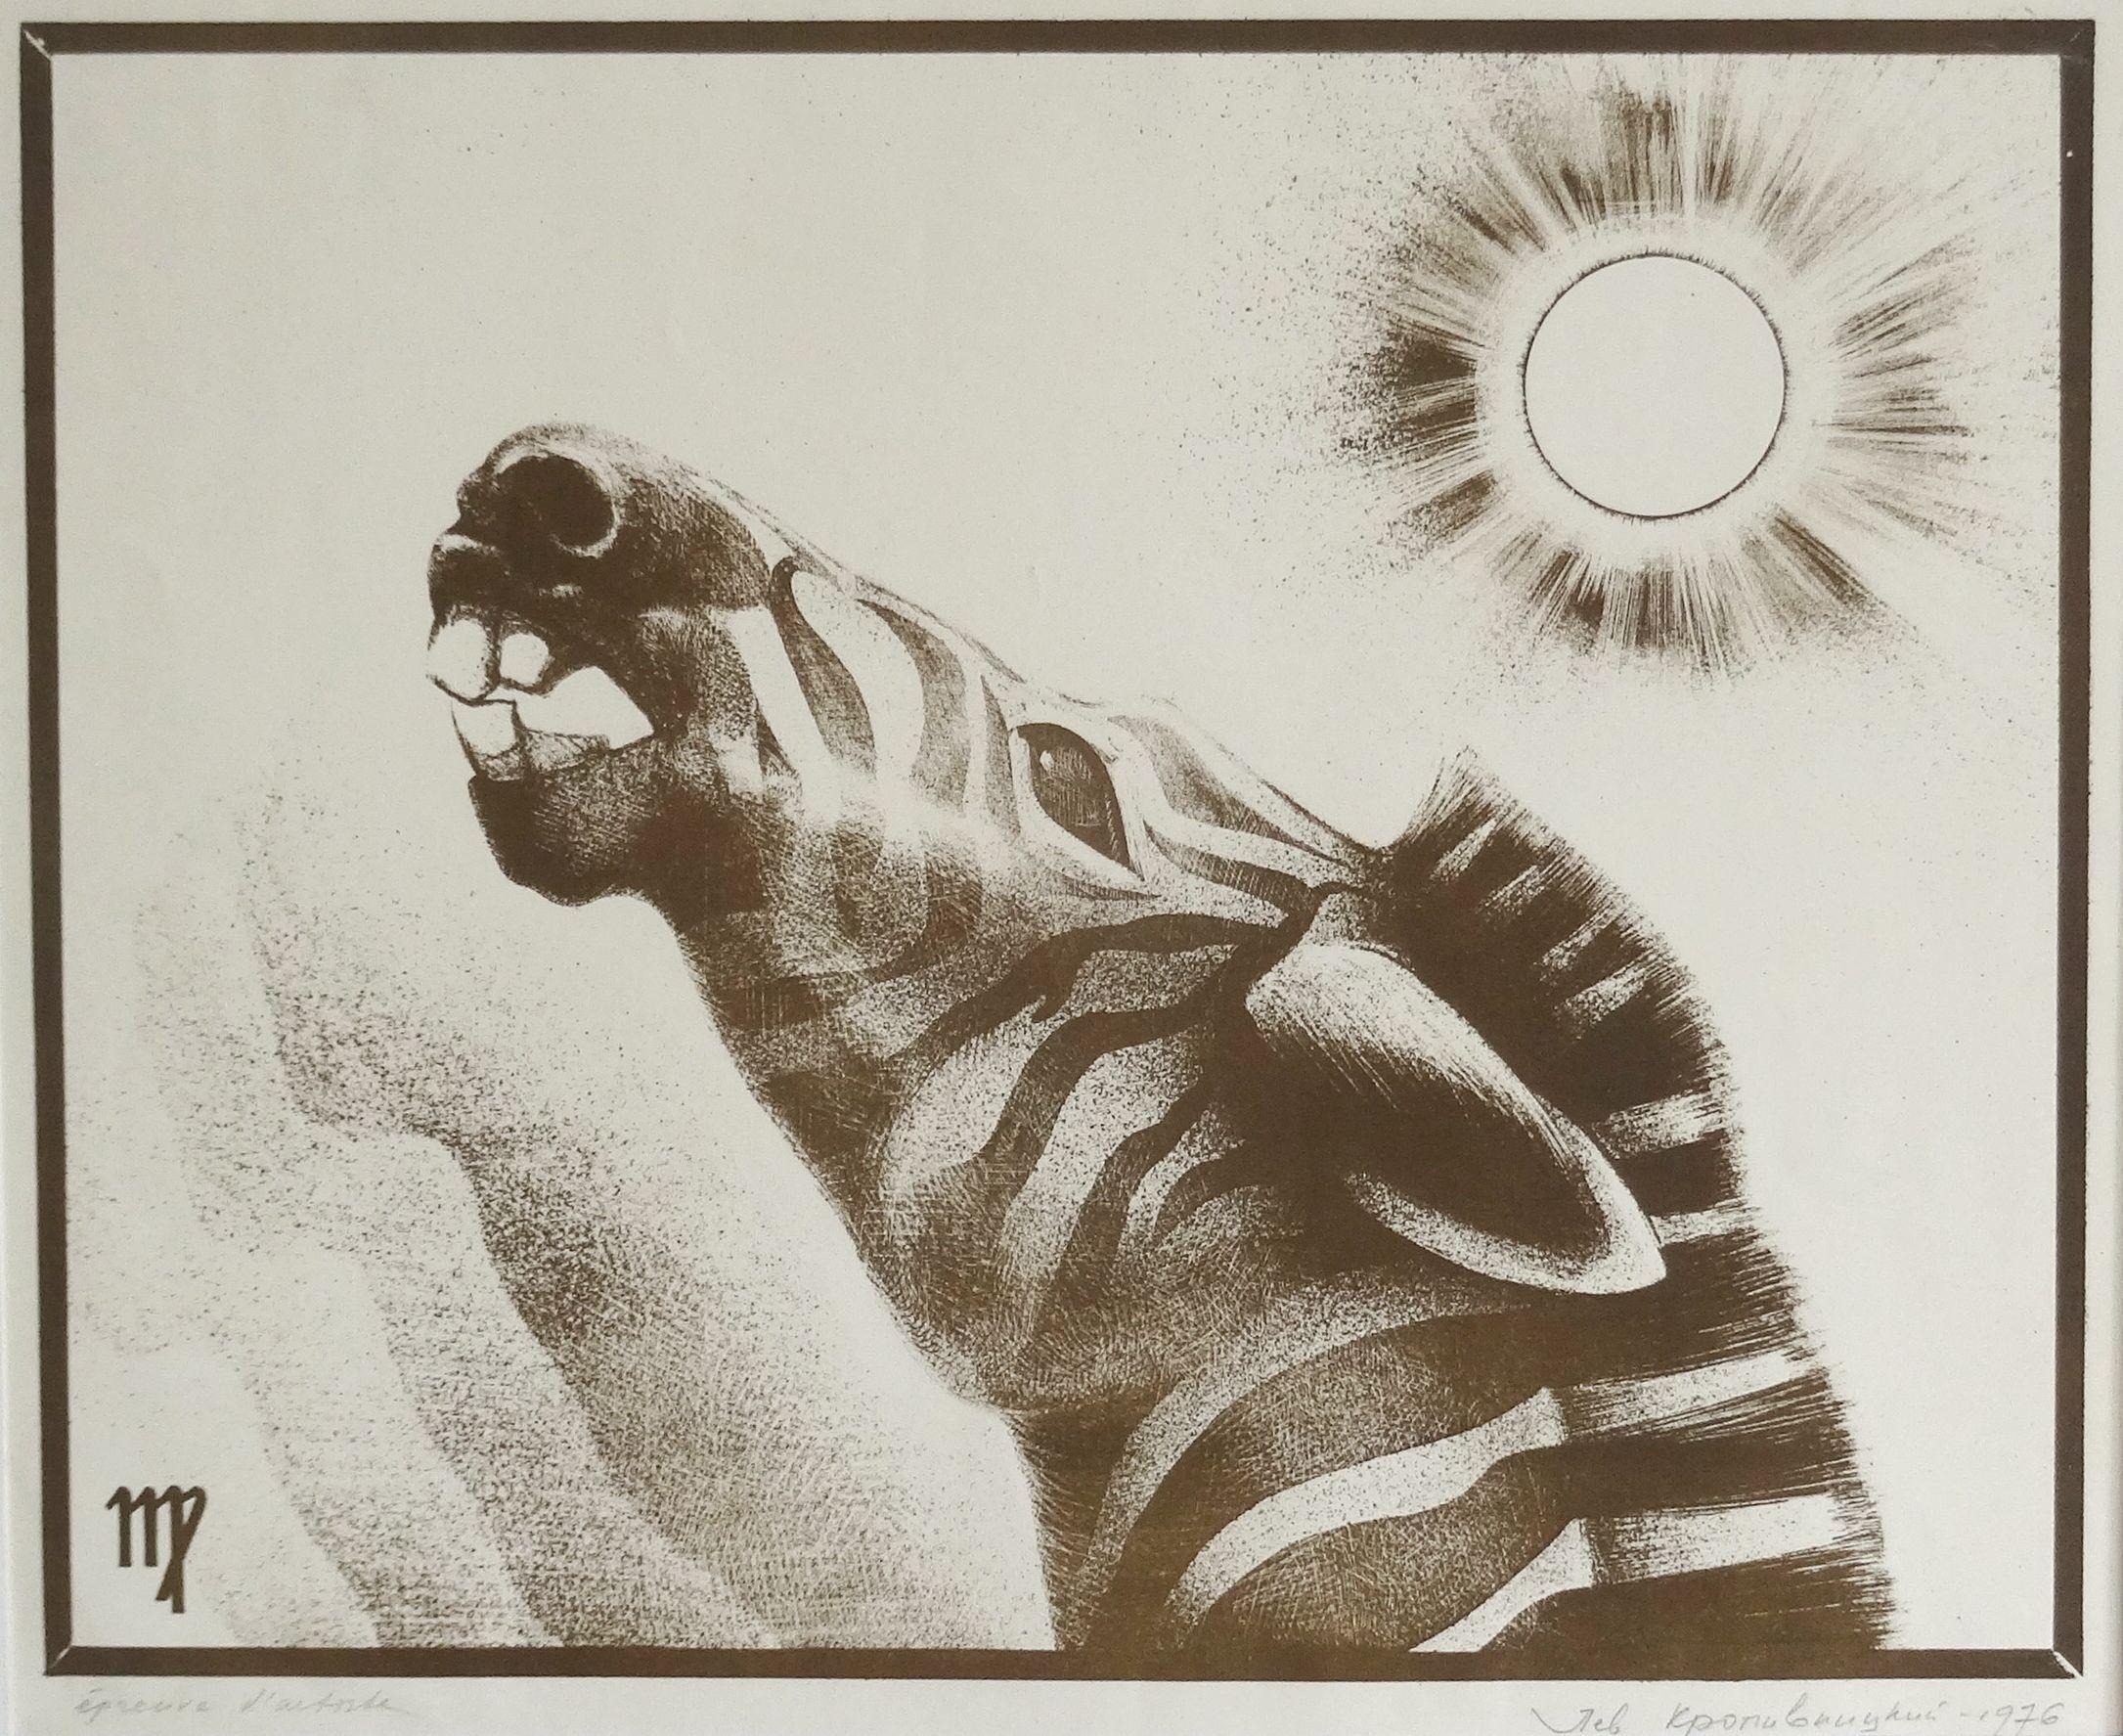 Animal Print Lev Kropivnitsky - Zebra. 1978, papier, aquatinte, 39x48 cm